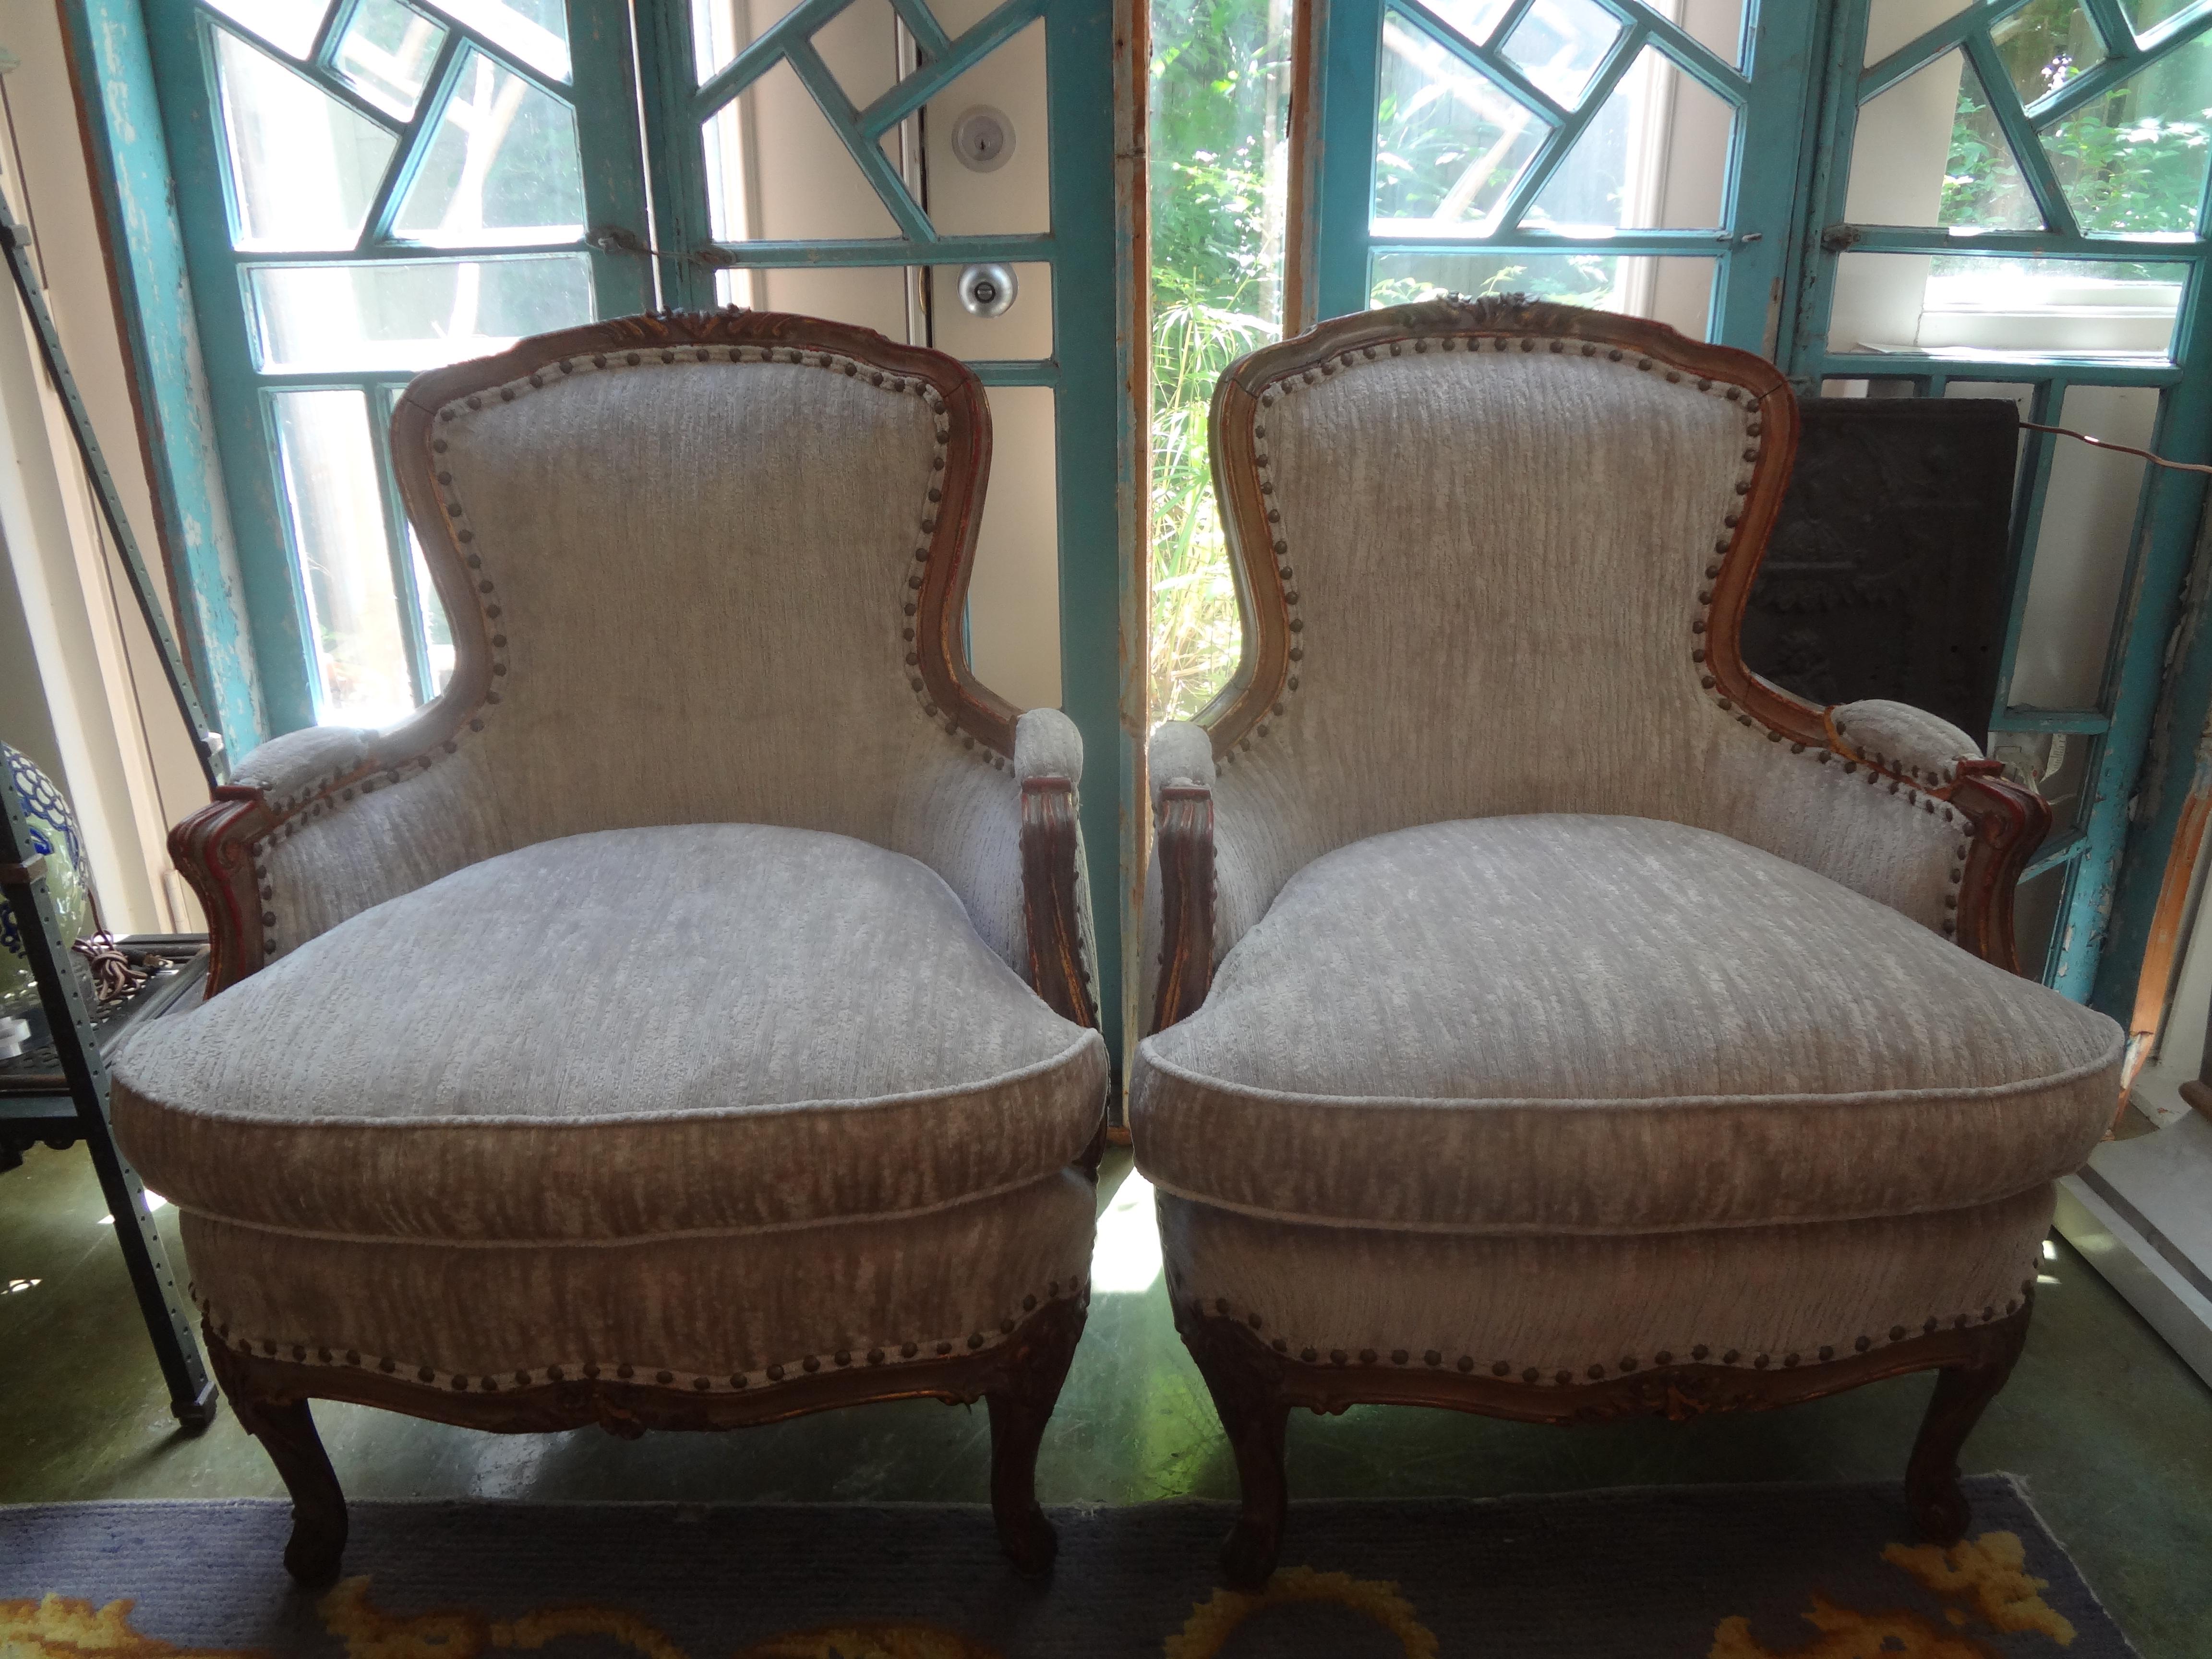 Paire de bergères italiennes du XIXe siècle de style Louis XV.
Cette paire de chaises italiennes anciennes est à la fois élégante et confortable. Cette paire de bergères italiennes, chaises de salon ou chaises d'appoint, possède une patine